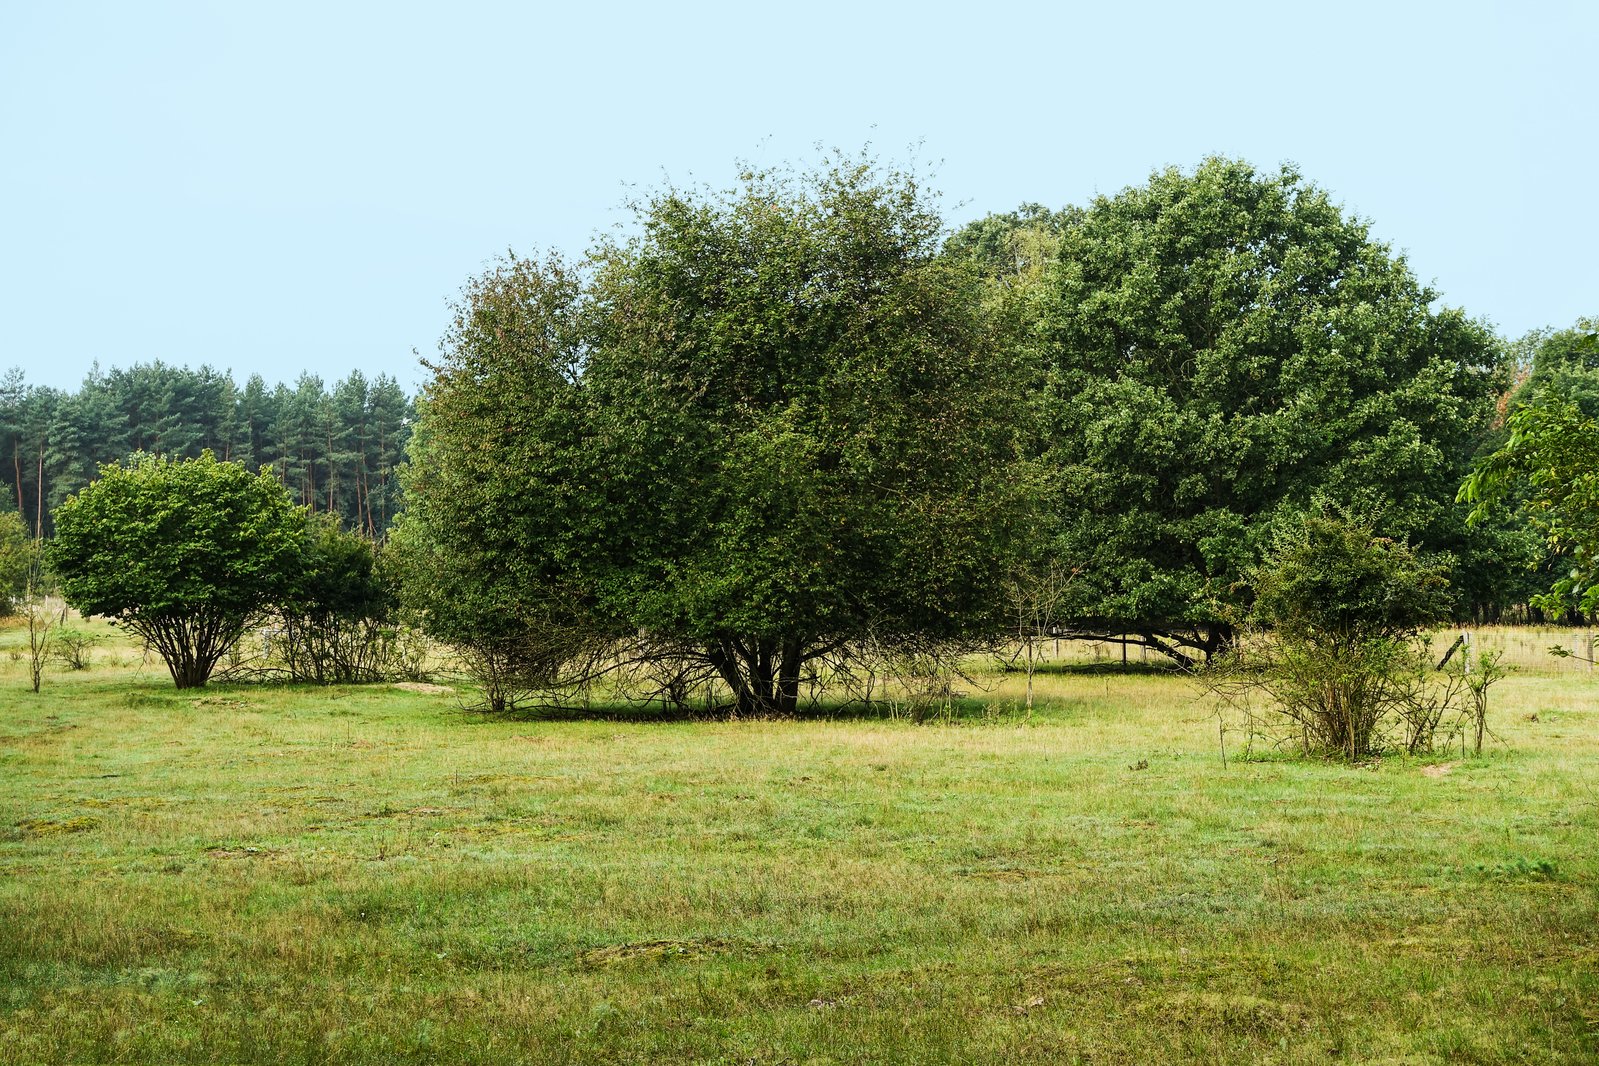 a lone giraffe standing in a grassy field